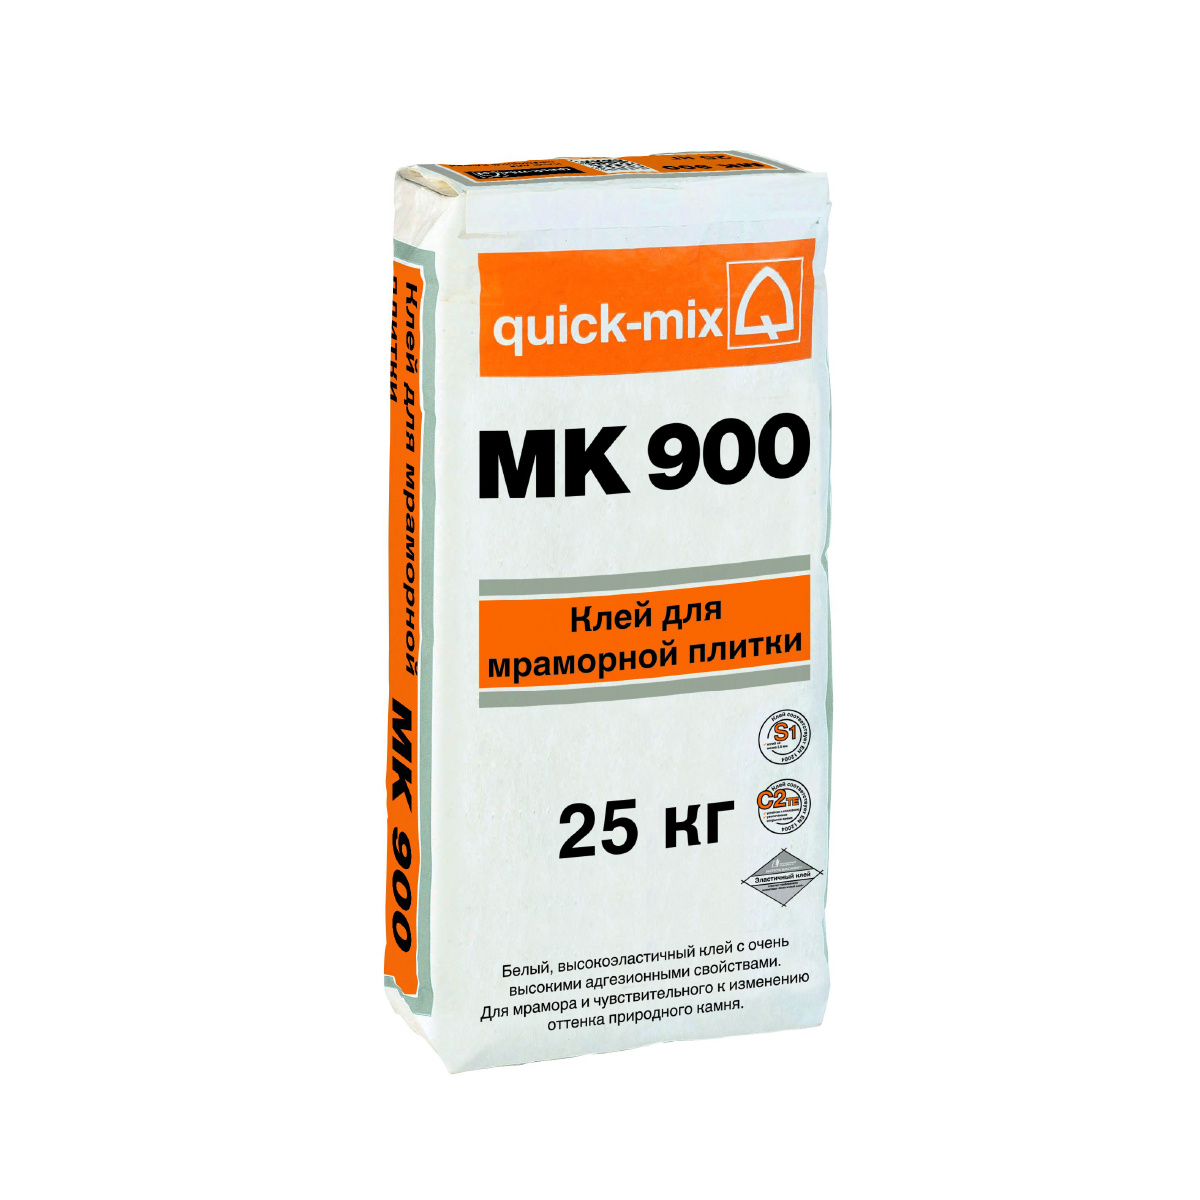 MK 900 Клей для мраморной плитки, белый (С2 ТЕ, S1) quick-mix, MK 900 Клей для мраморной плитки, белый (С2 ТЕ, S1) quick-mix